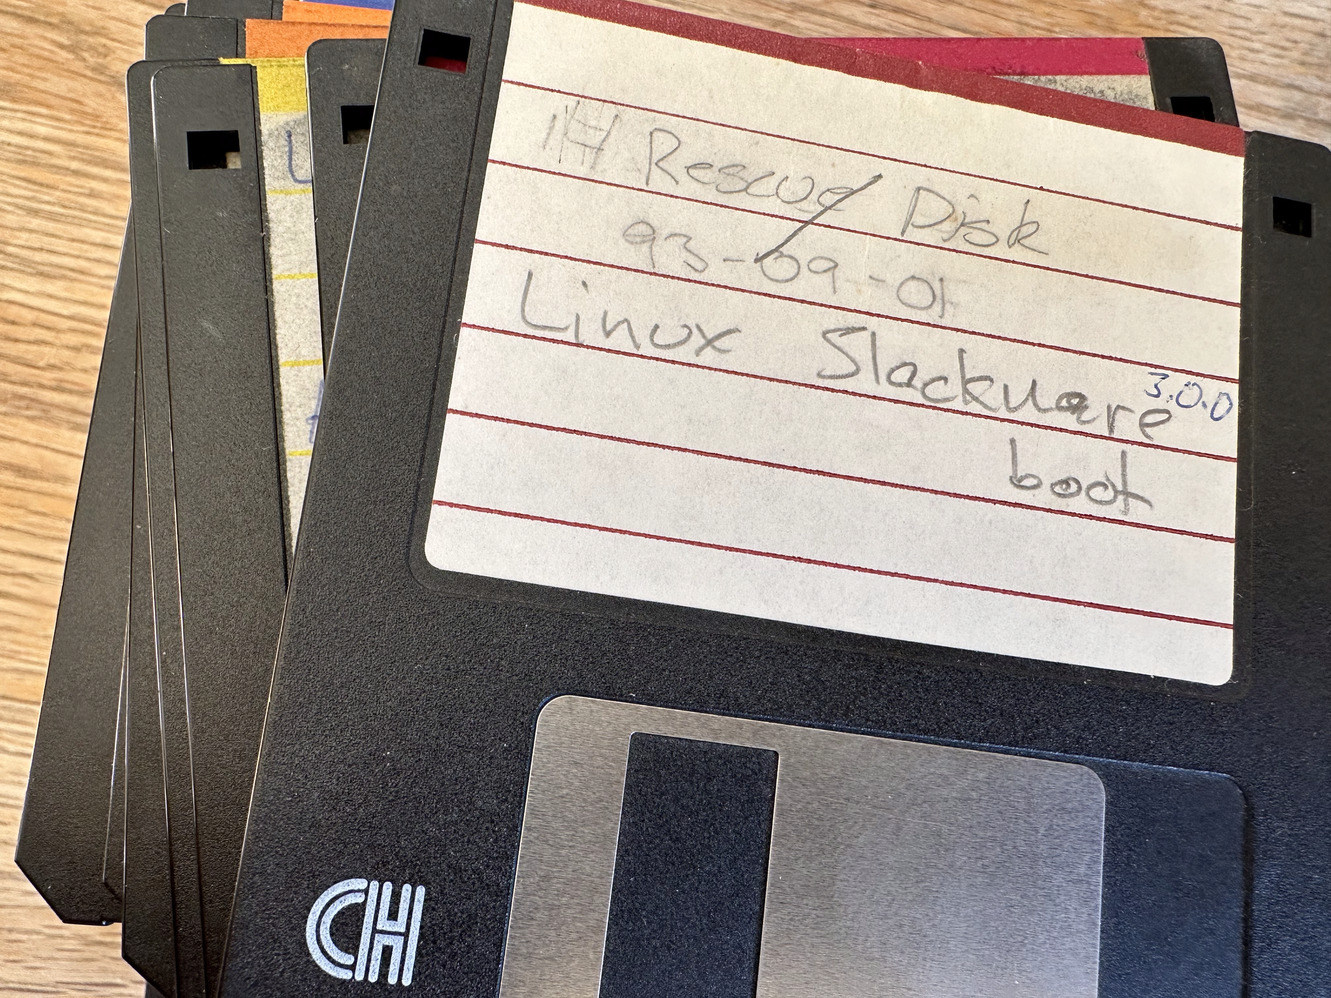 Slackware 3.5" disks